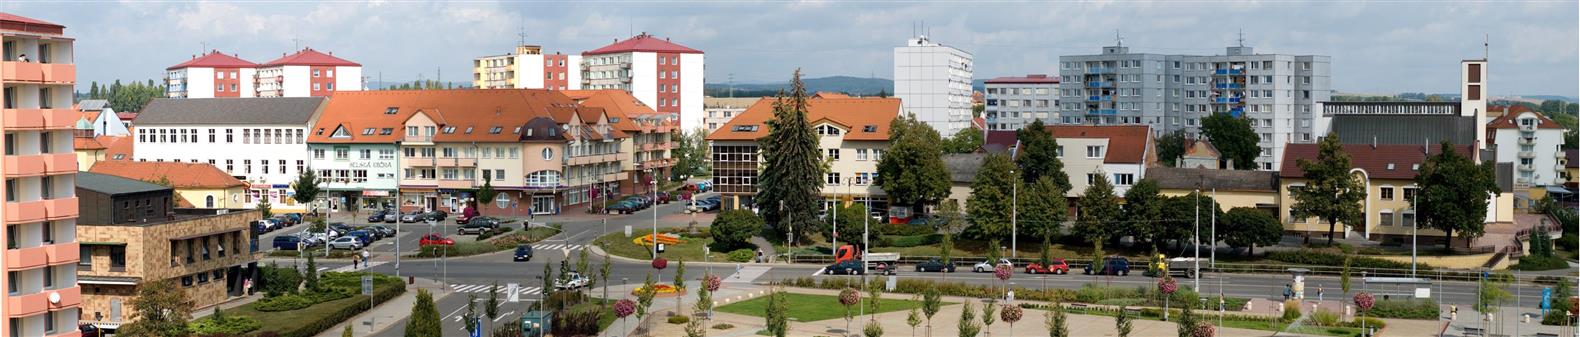 Town Otrokovice